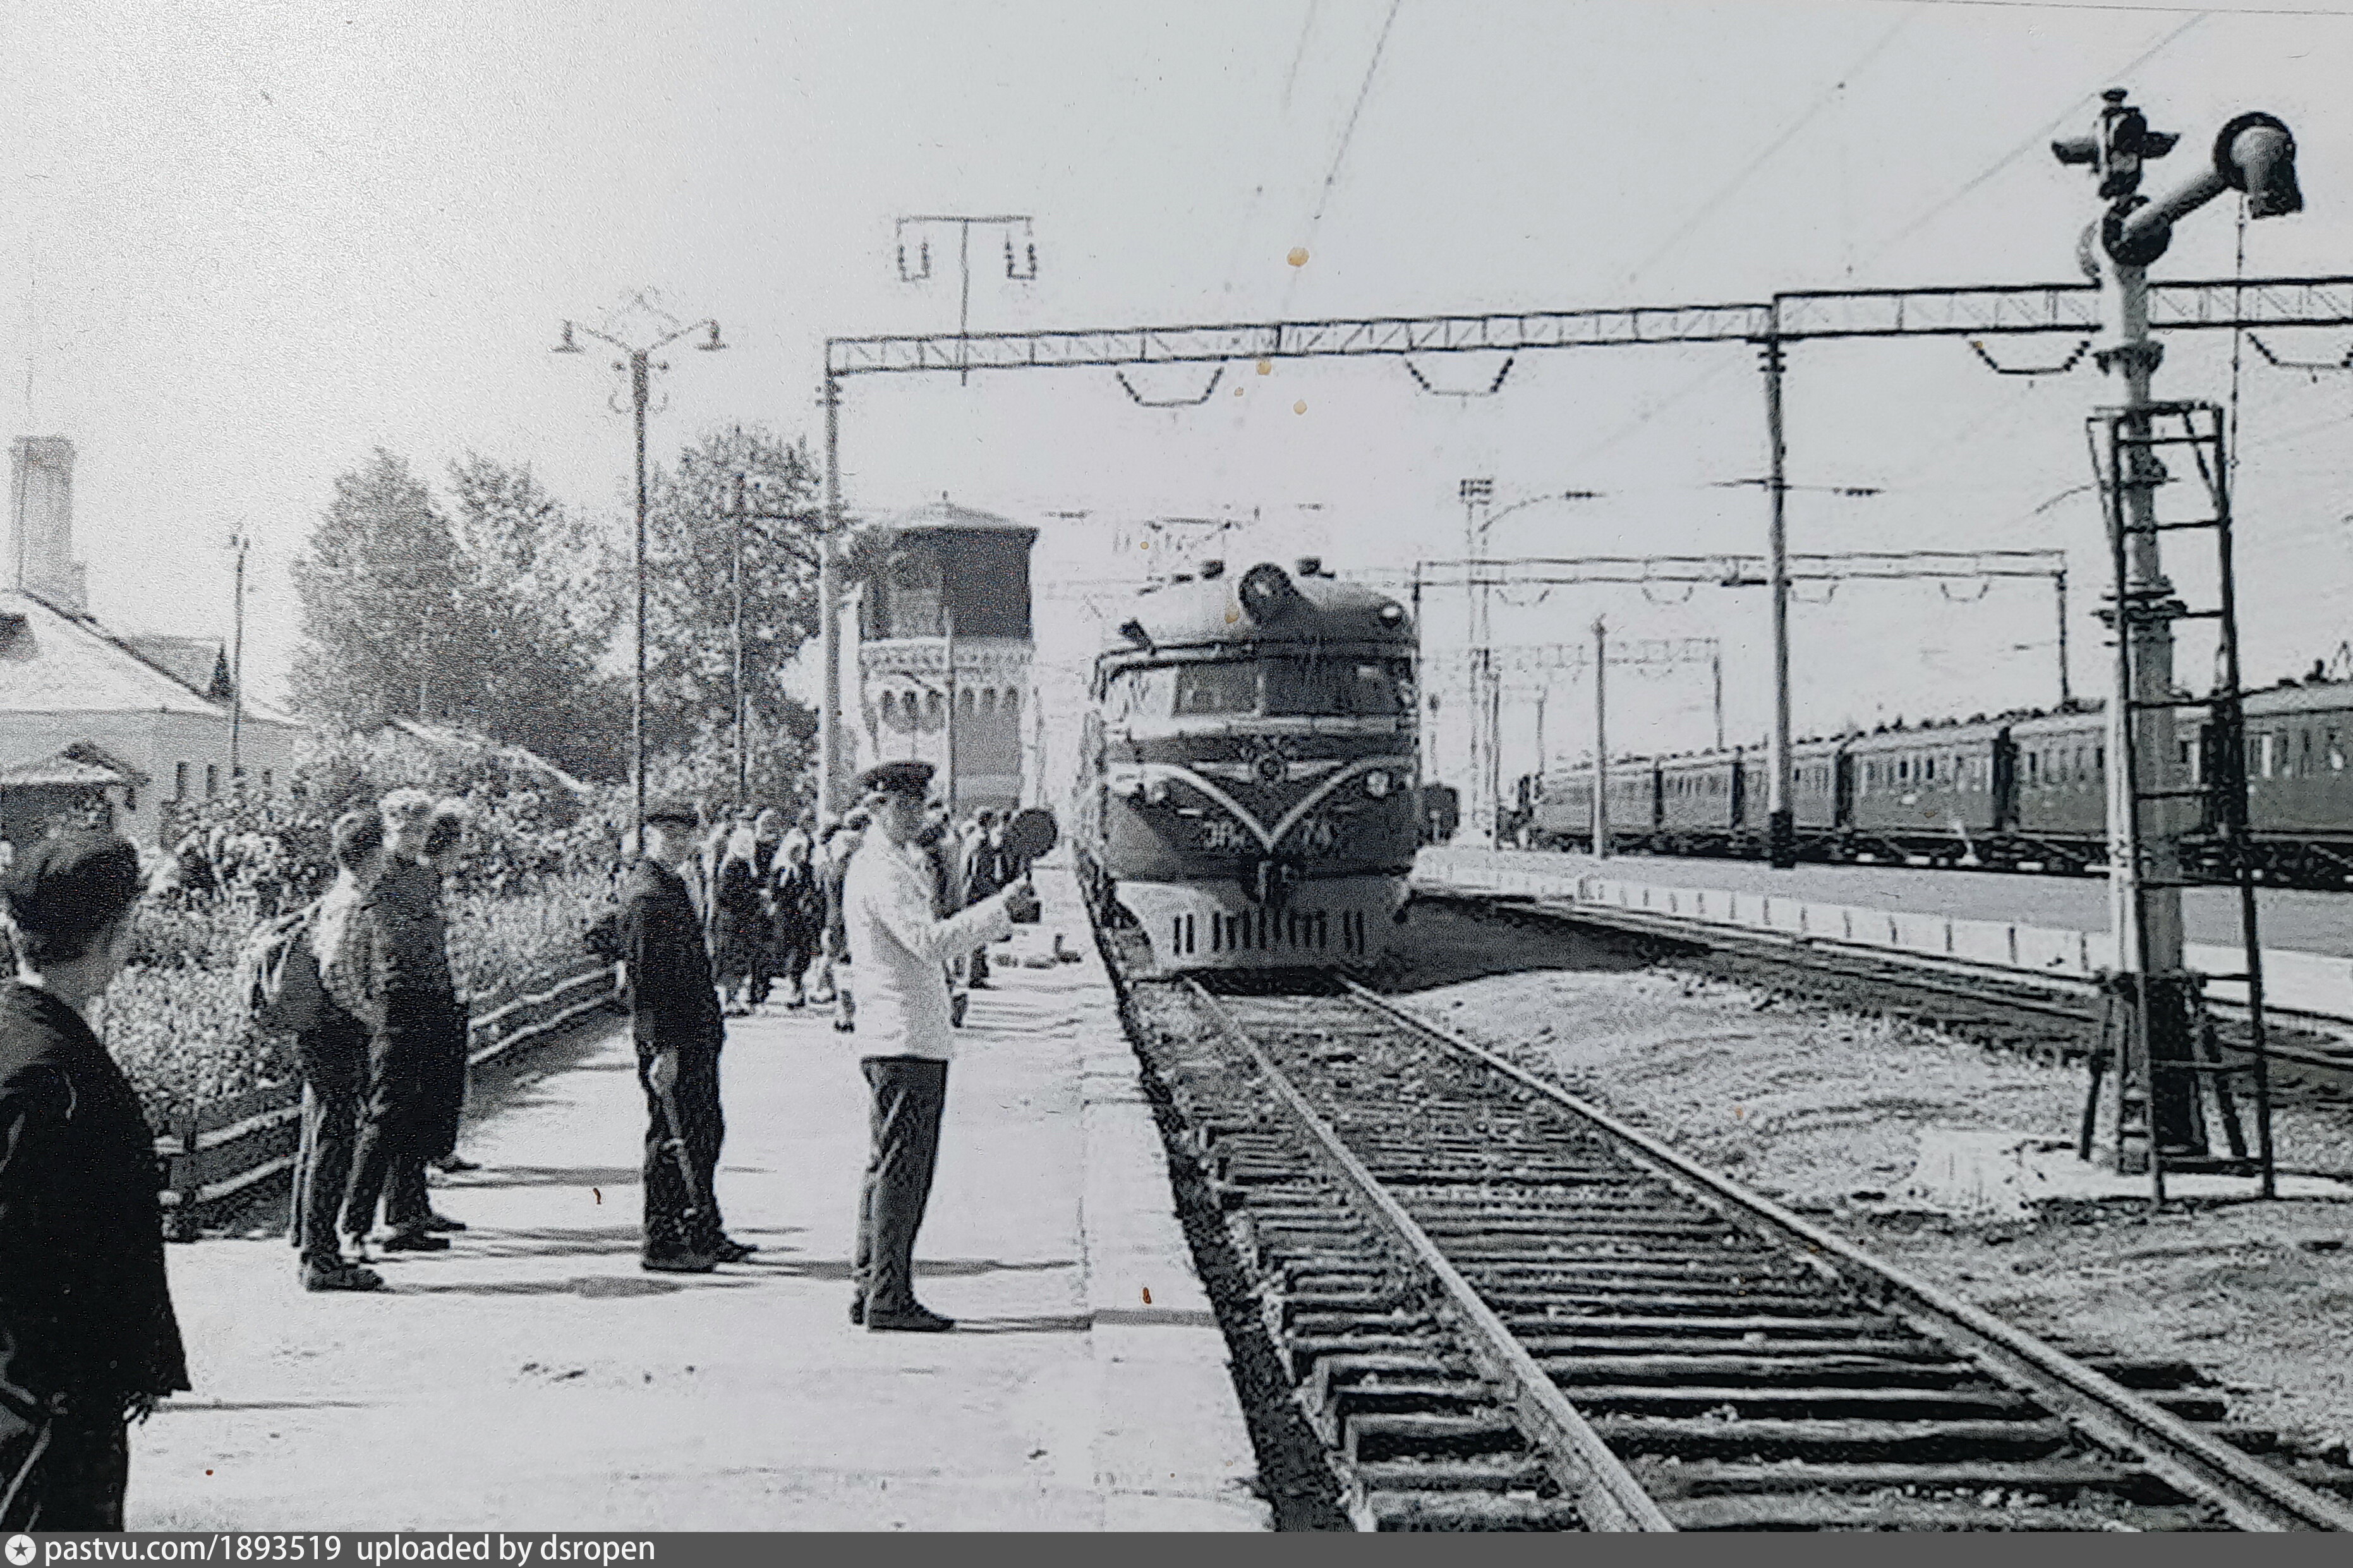 Прибытие поезда на станцию Узловая. Прибытие поезда на станцию конечная. Прибытие поезда в Саров. Pastvu 1961320. Пришли по прибытии поезда